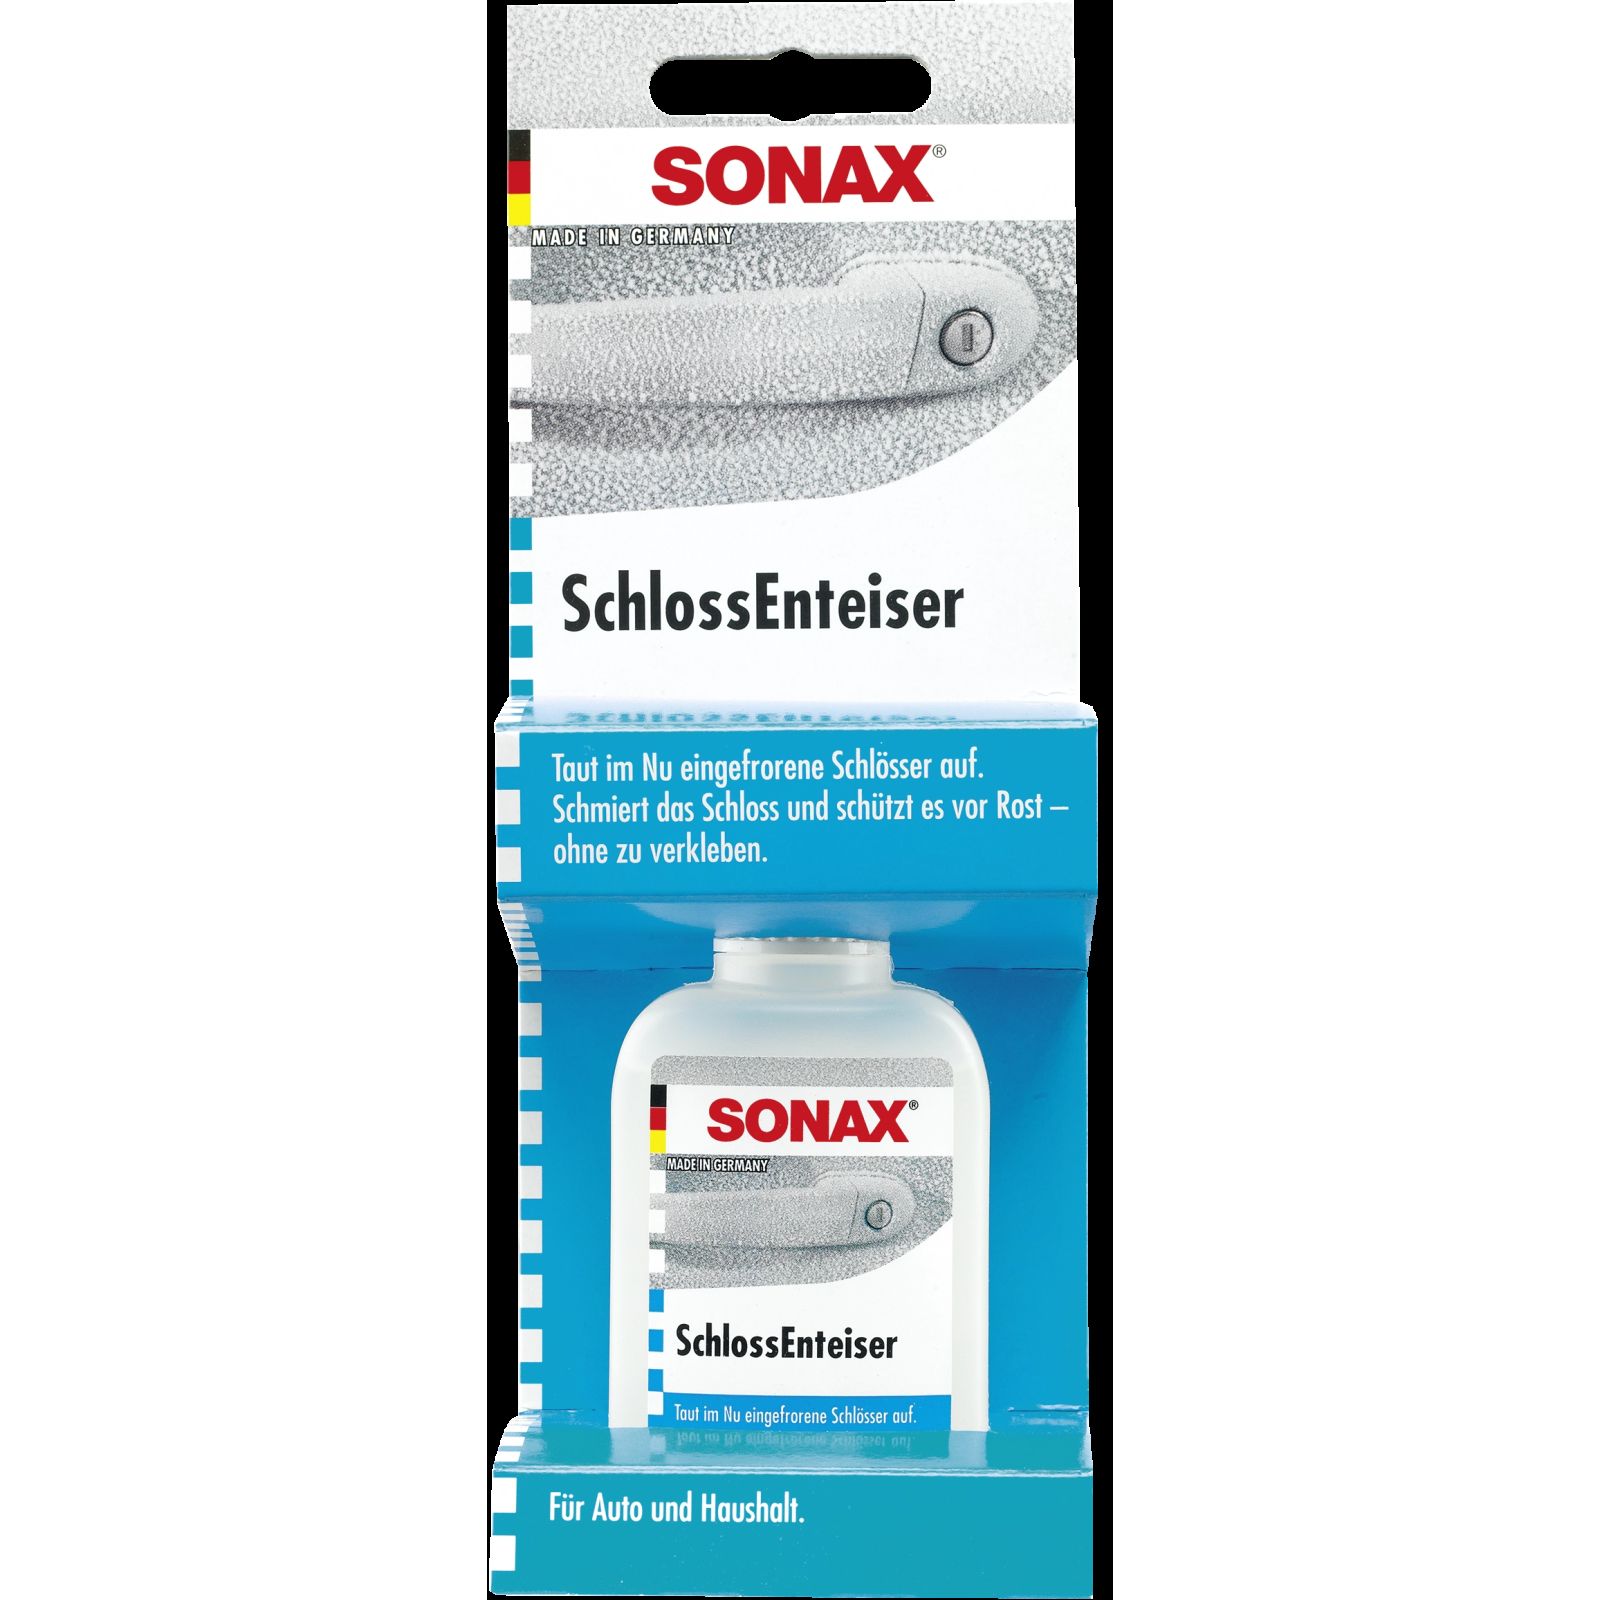 SONAX, SchlossEnteiser 50ml SB-Packung